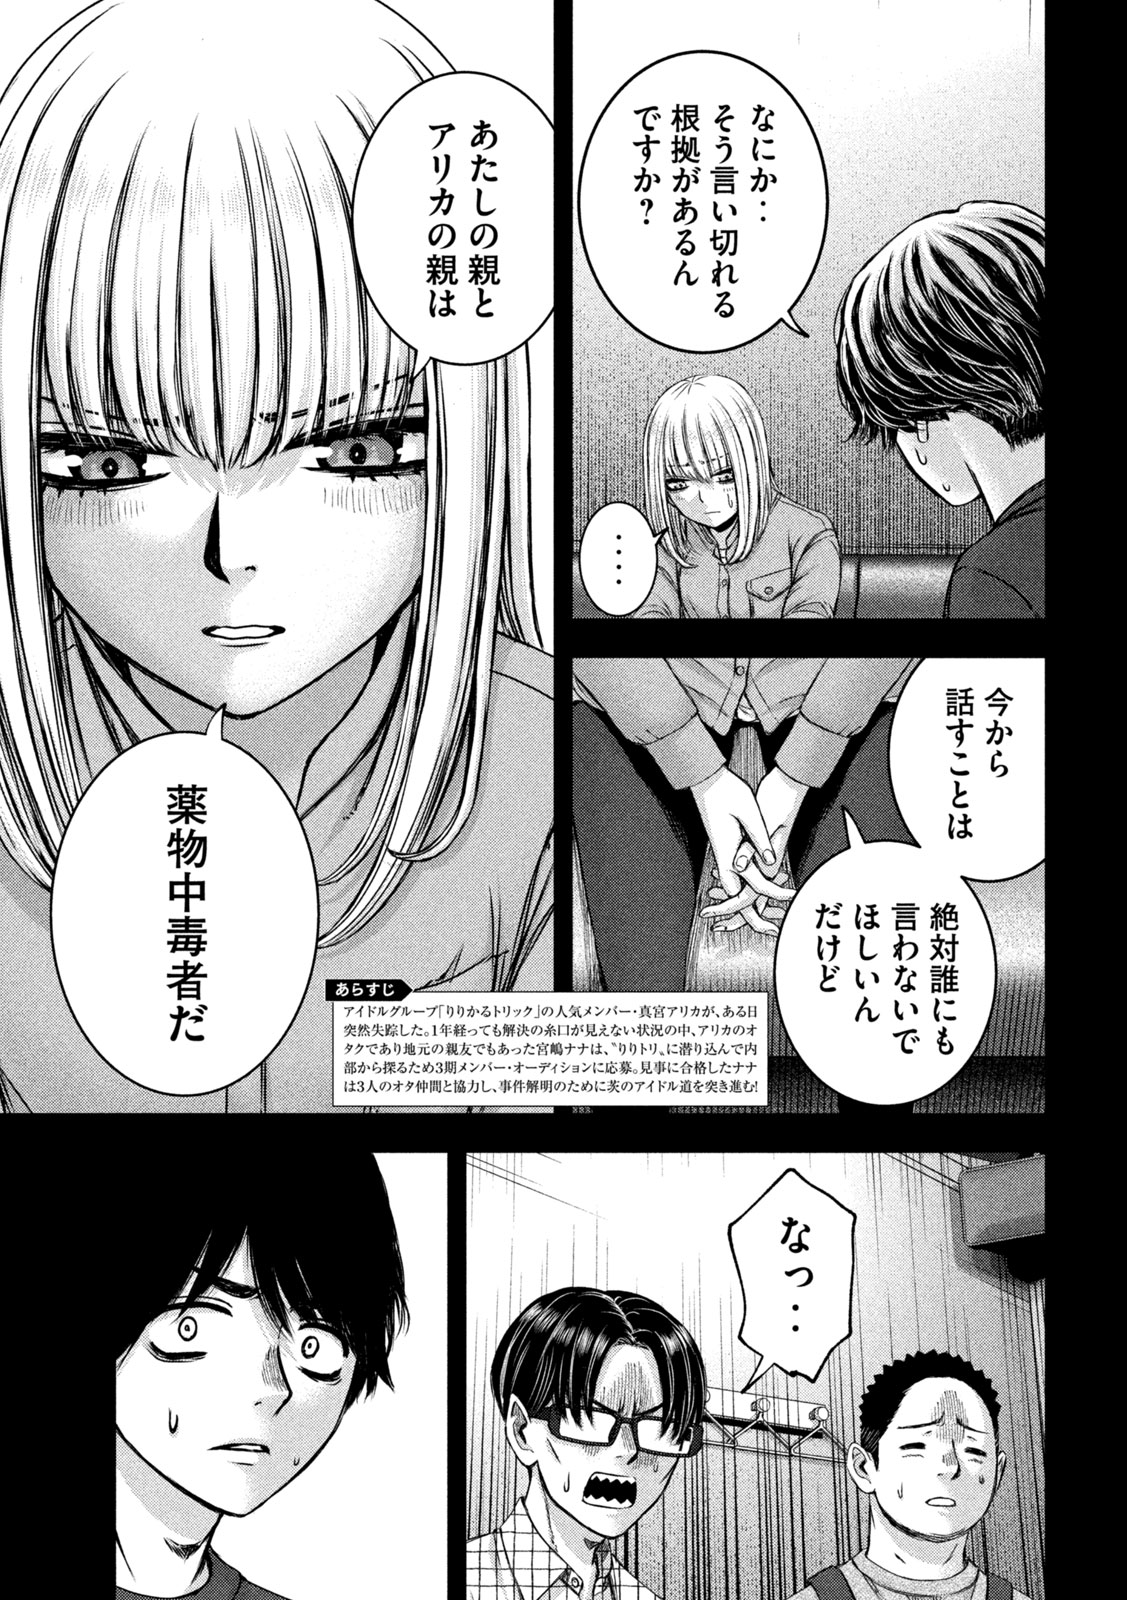 Watashi no Arika - Chapter 47 - Page 3